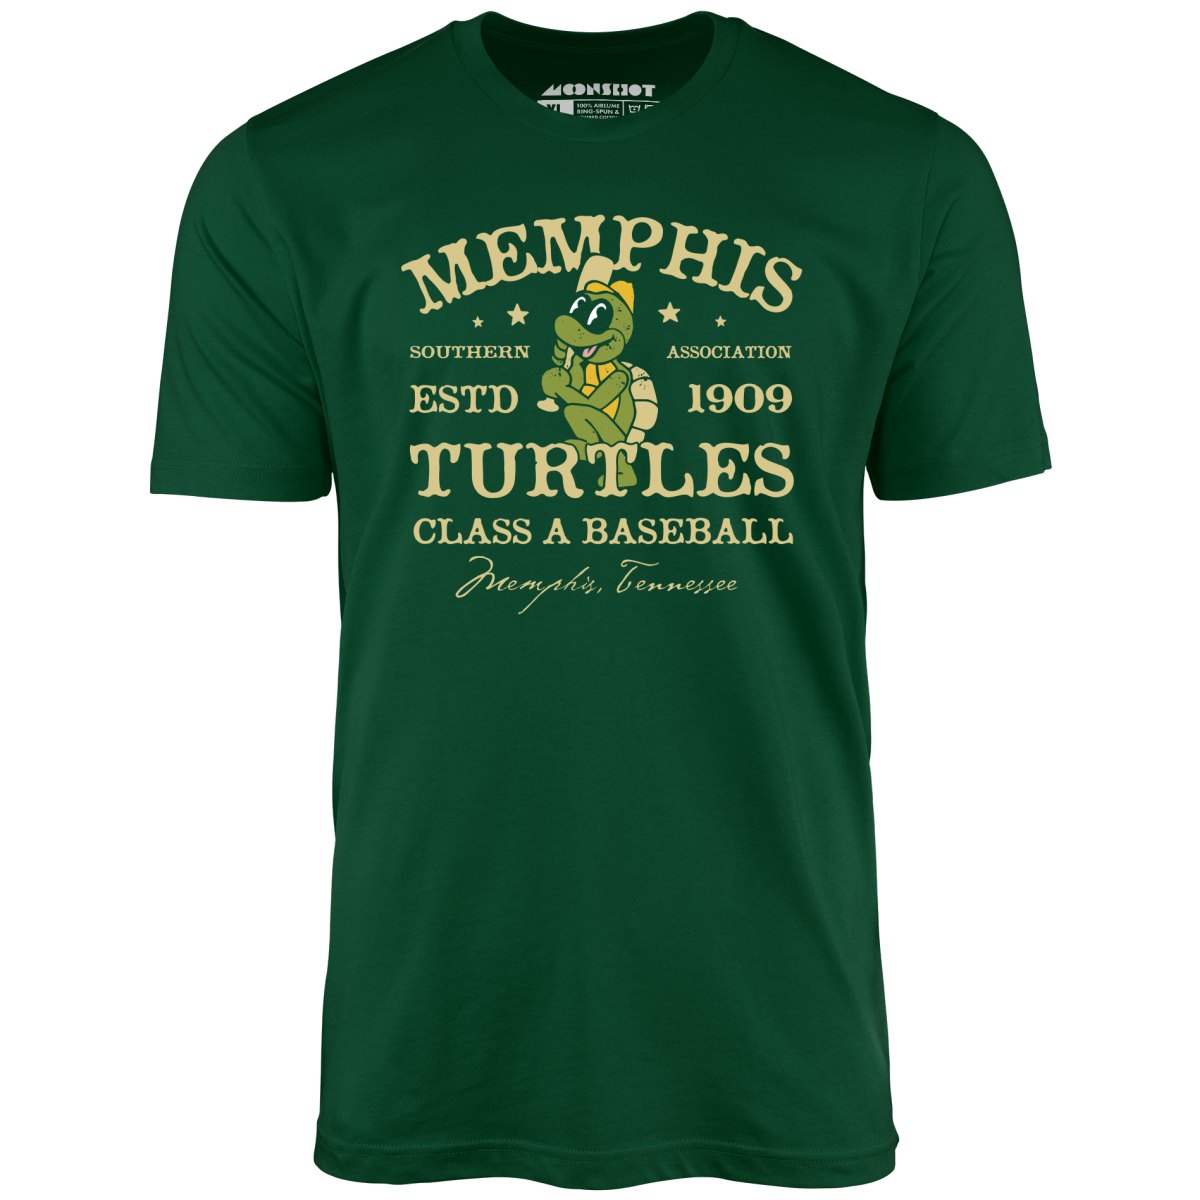 Memphis Turtles - Tennessee - Vintage Defunct Baseball Teams - Unisex T-Shirt